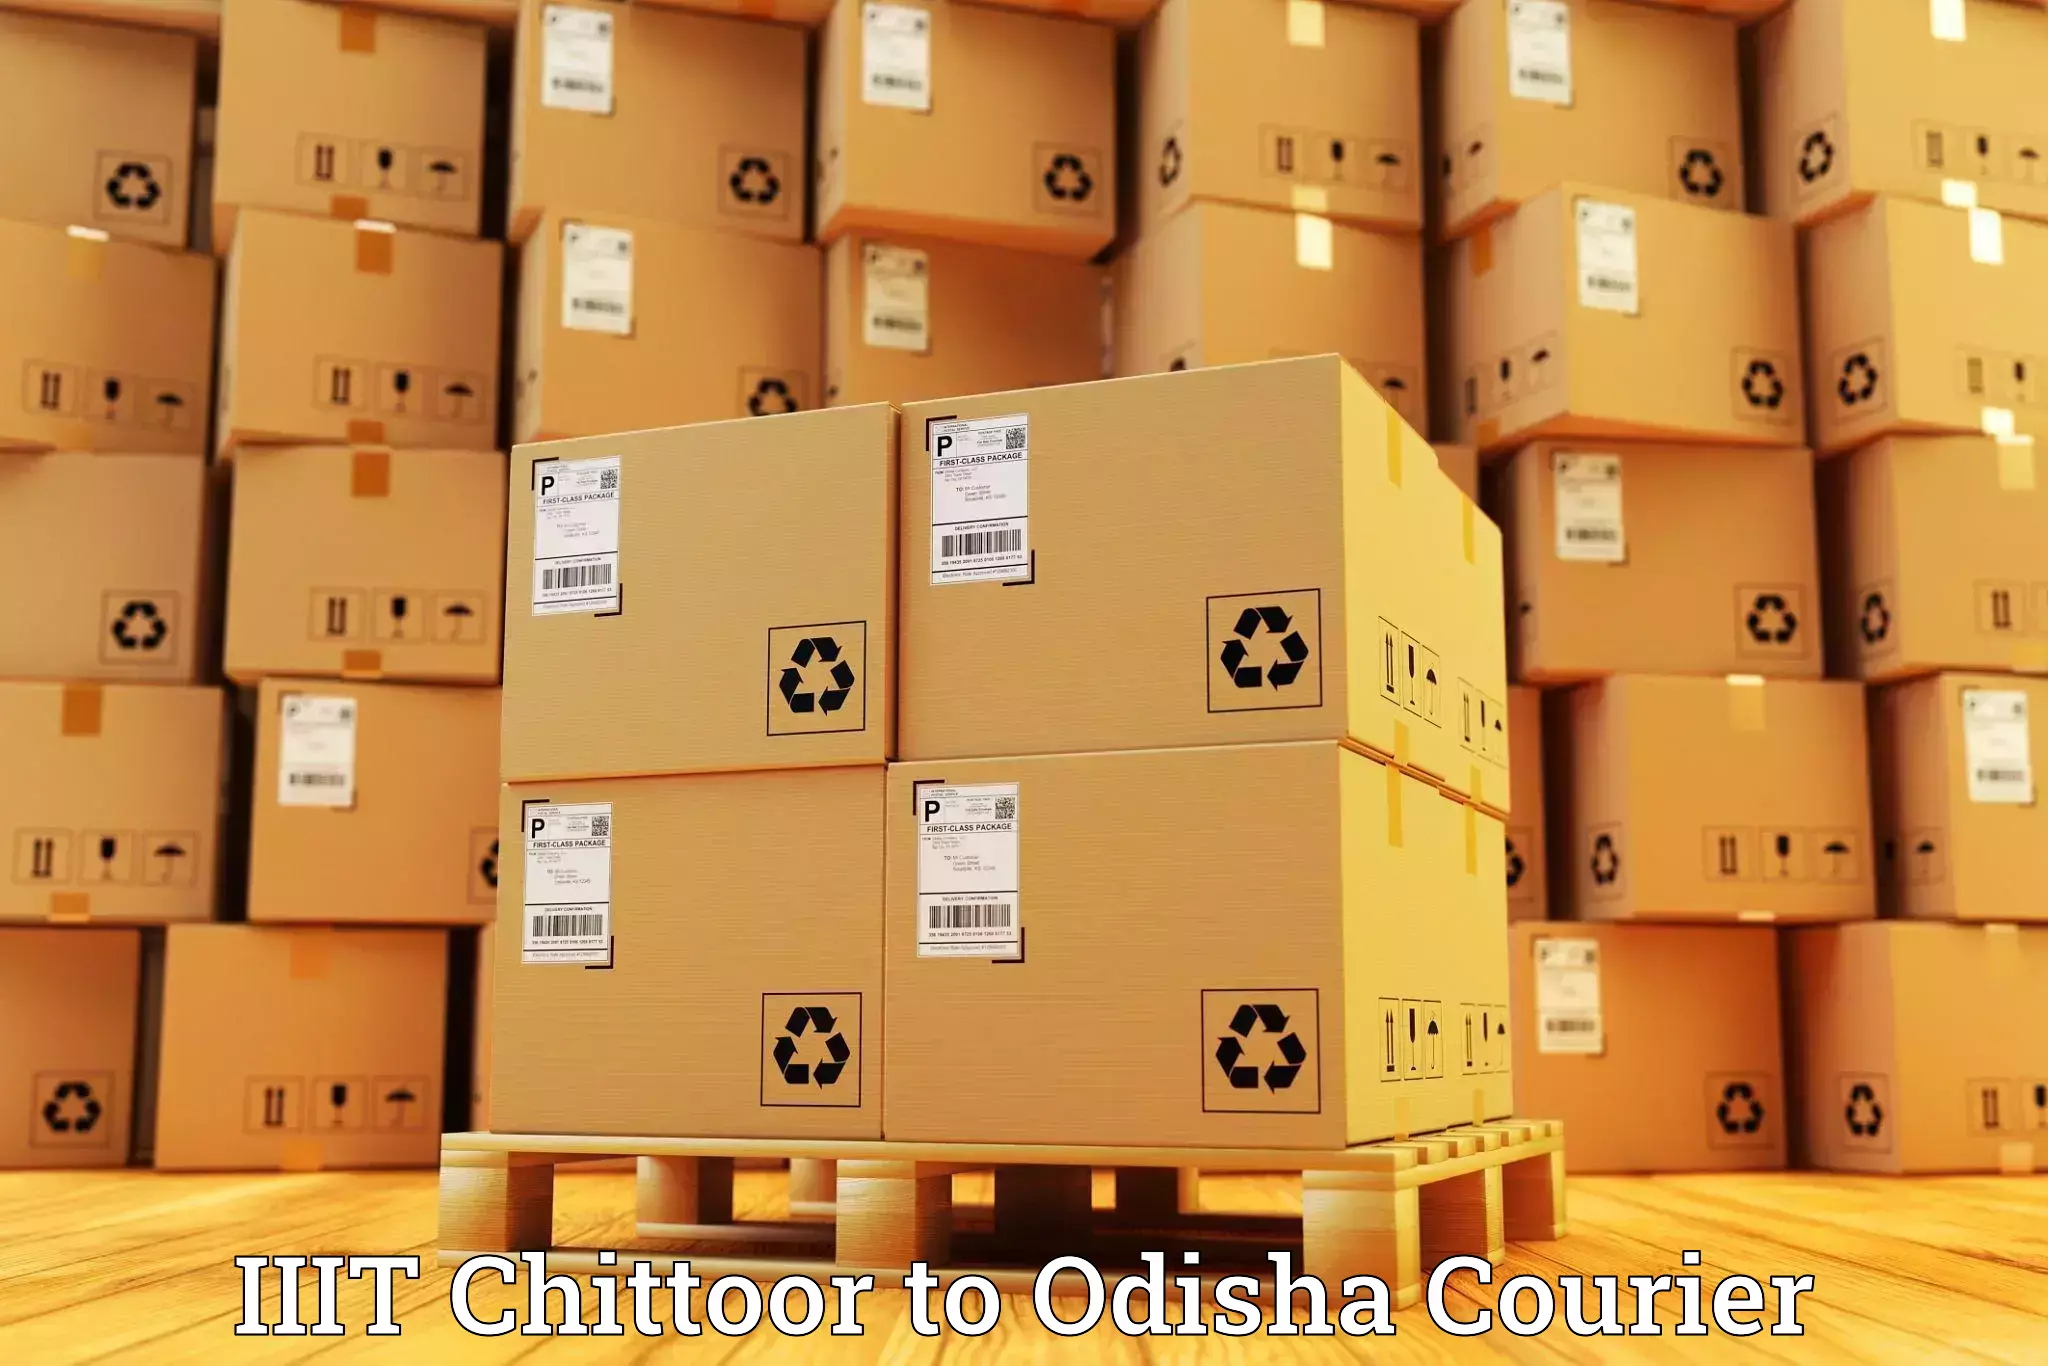 Efficient parcel transport IIIT Chittoor to Swampatna